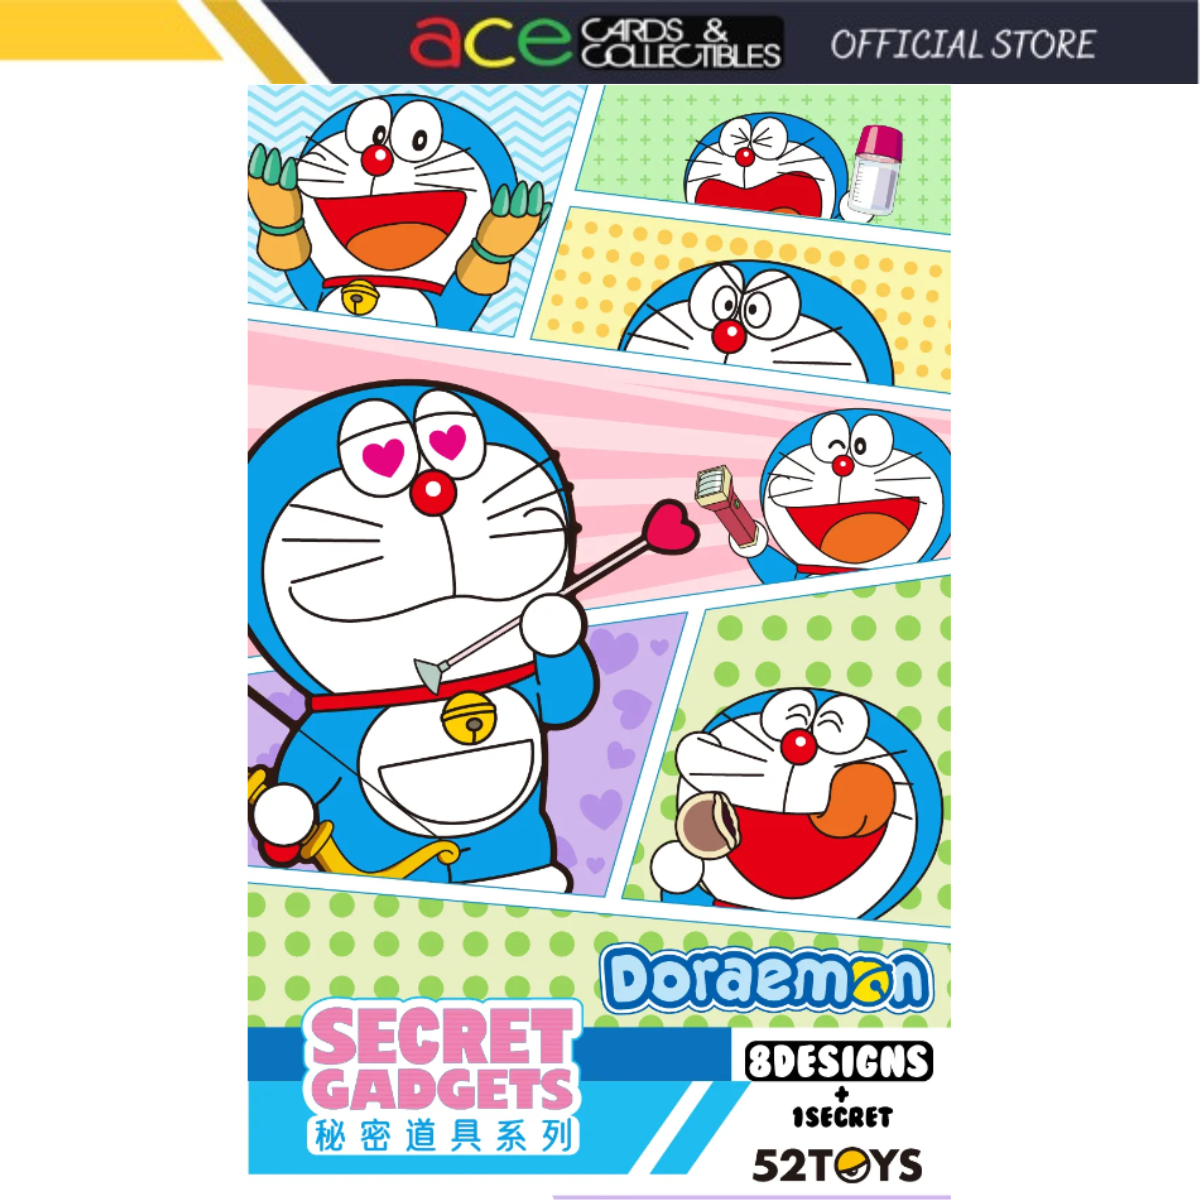 52Toys x Doraemon Secret Gadgets Series-Single Box (Random)-52Toys-Ace Cards &amp; Collectibles